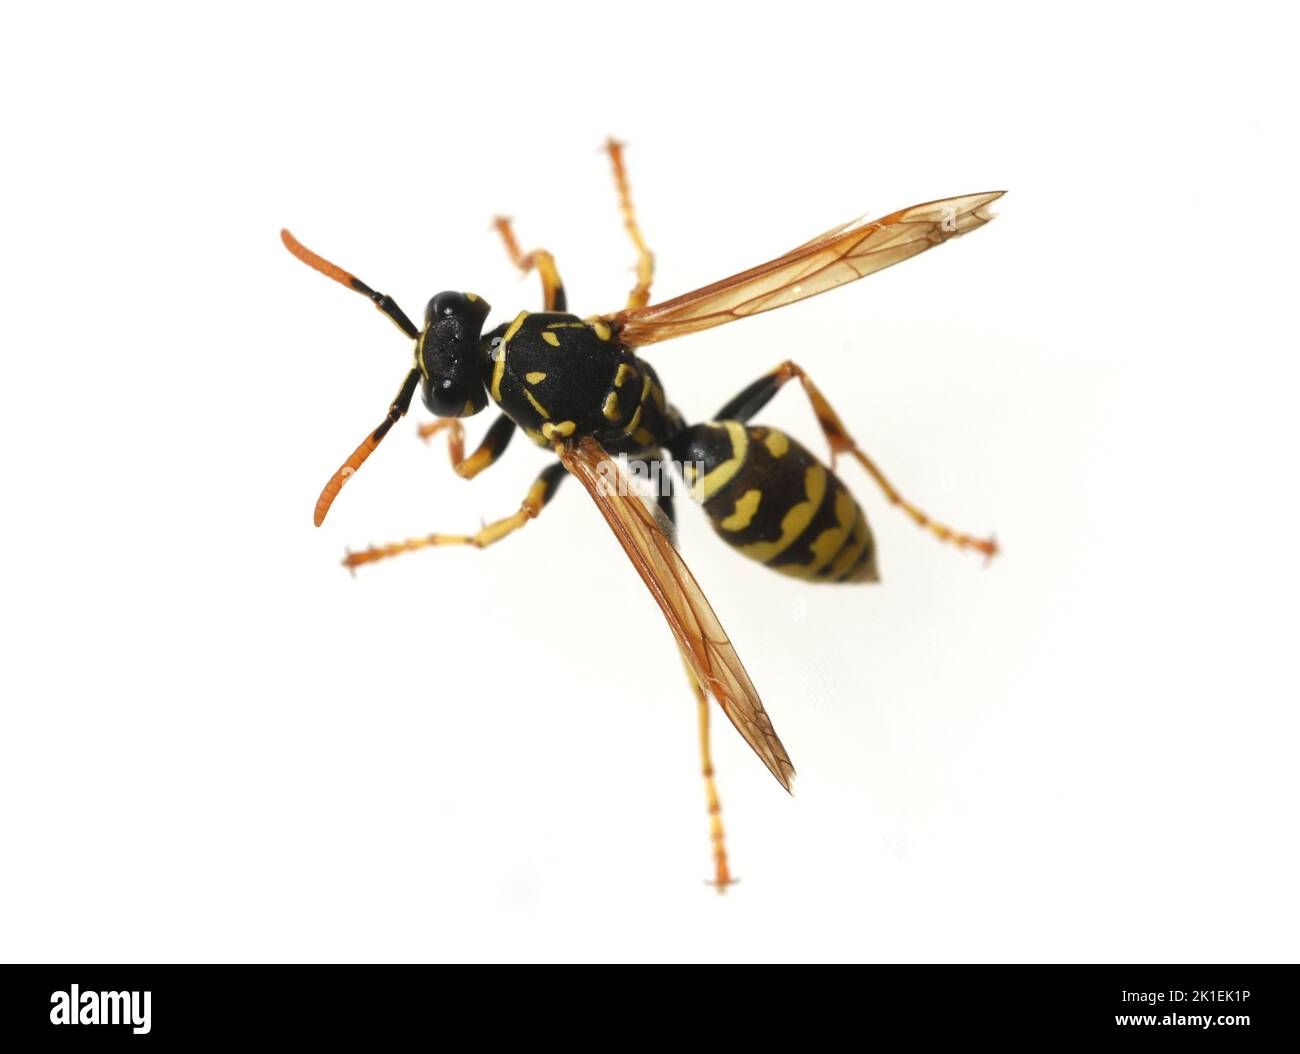 WASP, Vespula germanica, è un insetto utile e protetto. Foto Stock